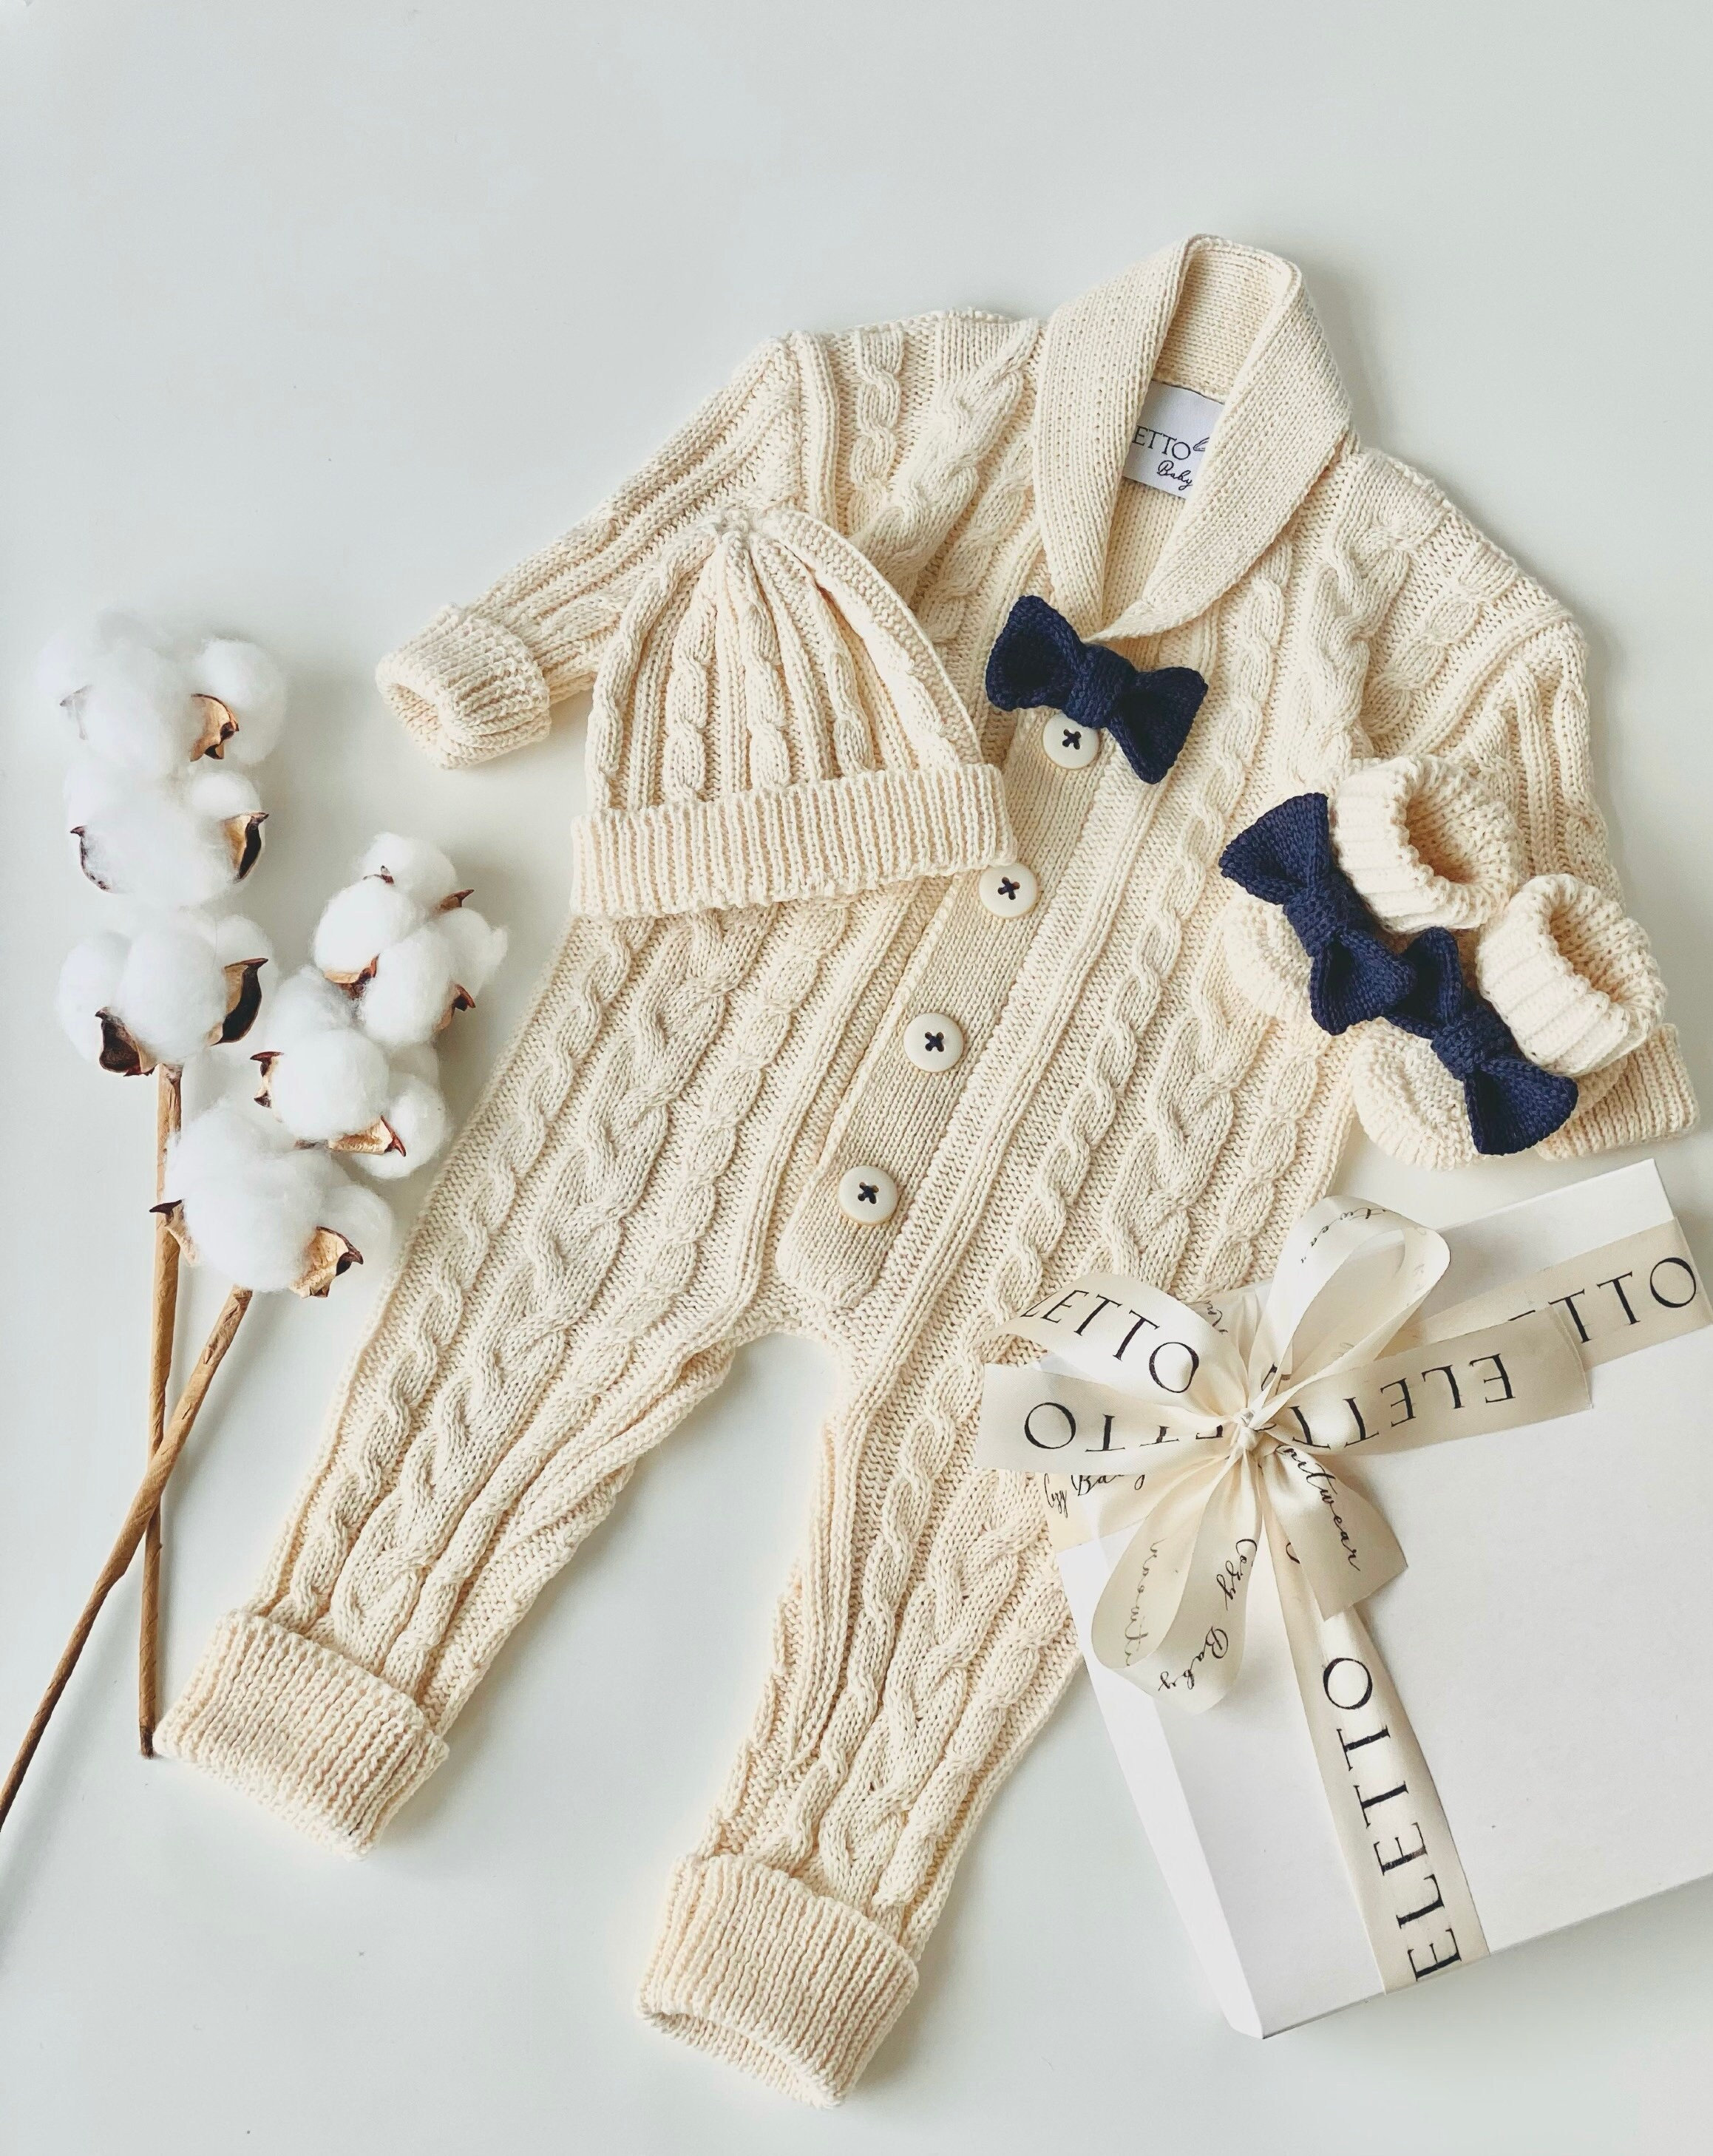 25 Free Baby Sweater Knitting Patterns - Sarah Maker